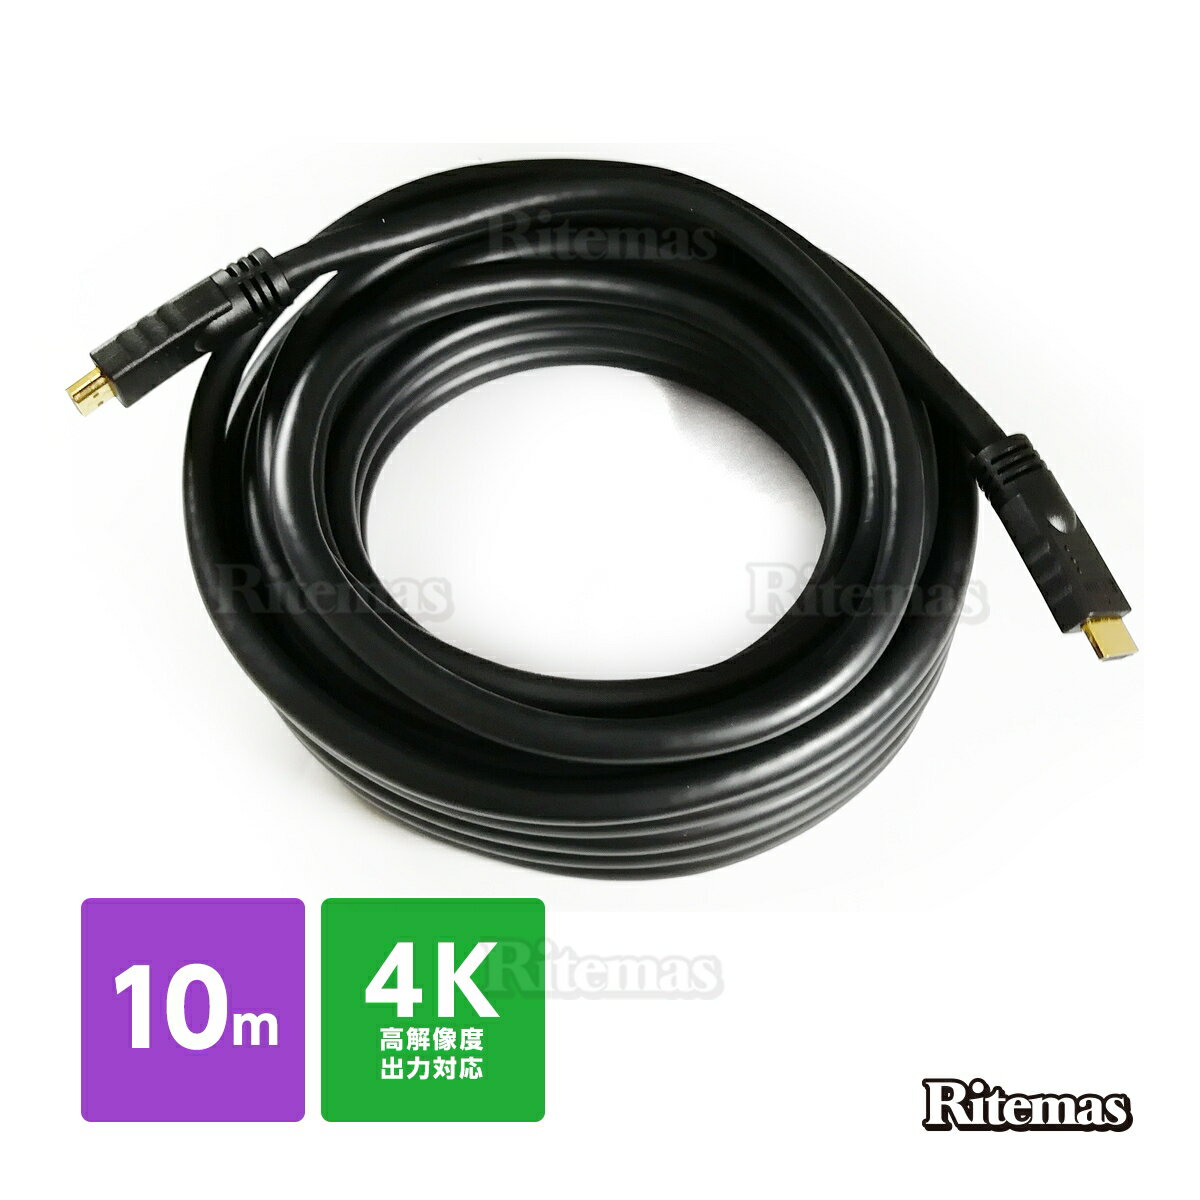 HDMI ケーブル 10m 1000cm 3D ver.1.4 フルHD 3D映像 4K テレビ パソコン モニター フルハイビジョン対応 タイプAオス-タイプAオス イーサネット オーディオリターン配線 コード TV PC プレステ タブレット DVDプレーヤー 入力 出力 接続 ゲーム PS3 PS4 Xbox360